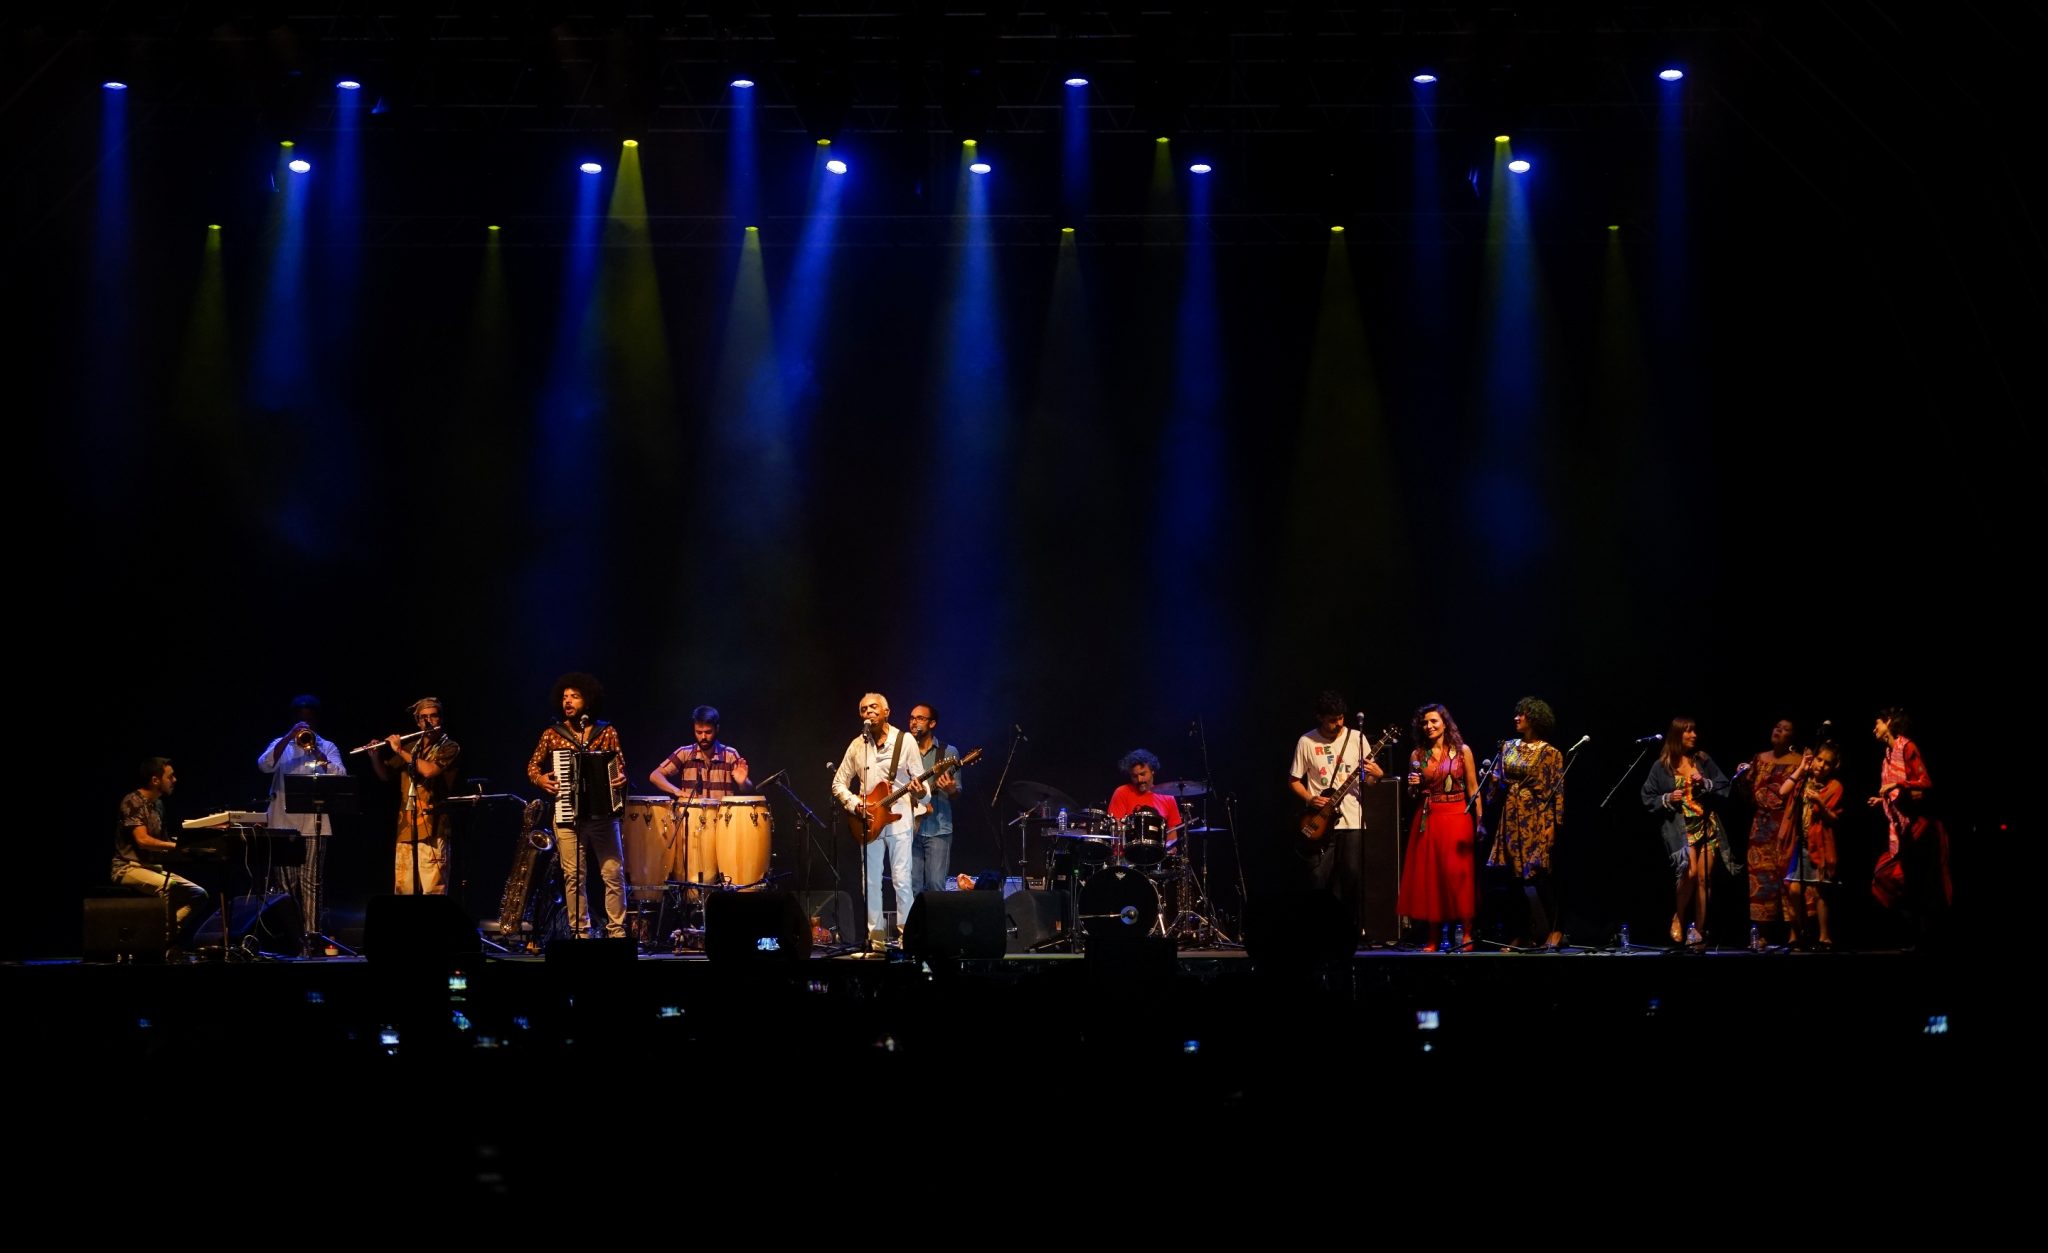 Vista geral do palco no concerto Revafela 40 com o músico Gilberto Gil ao centro, vestido de branco